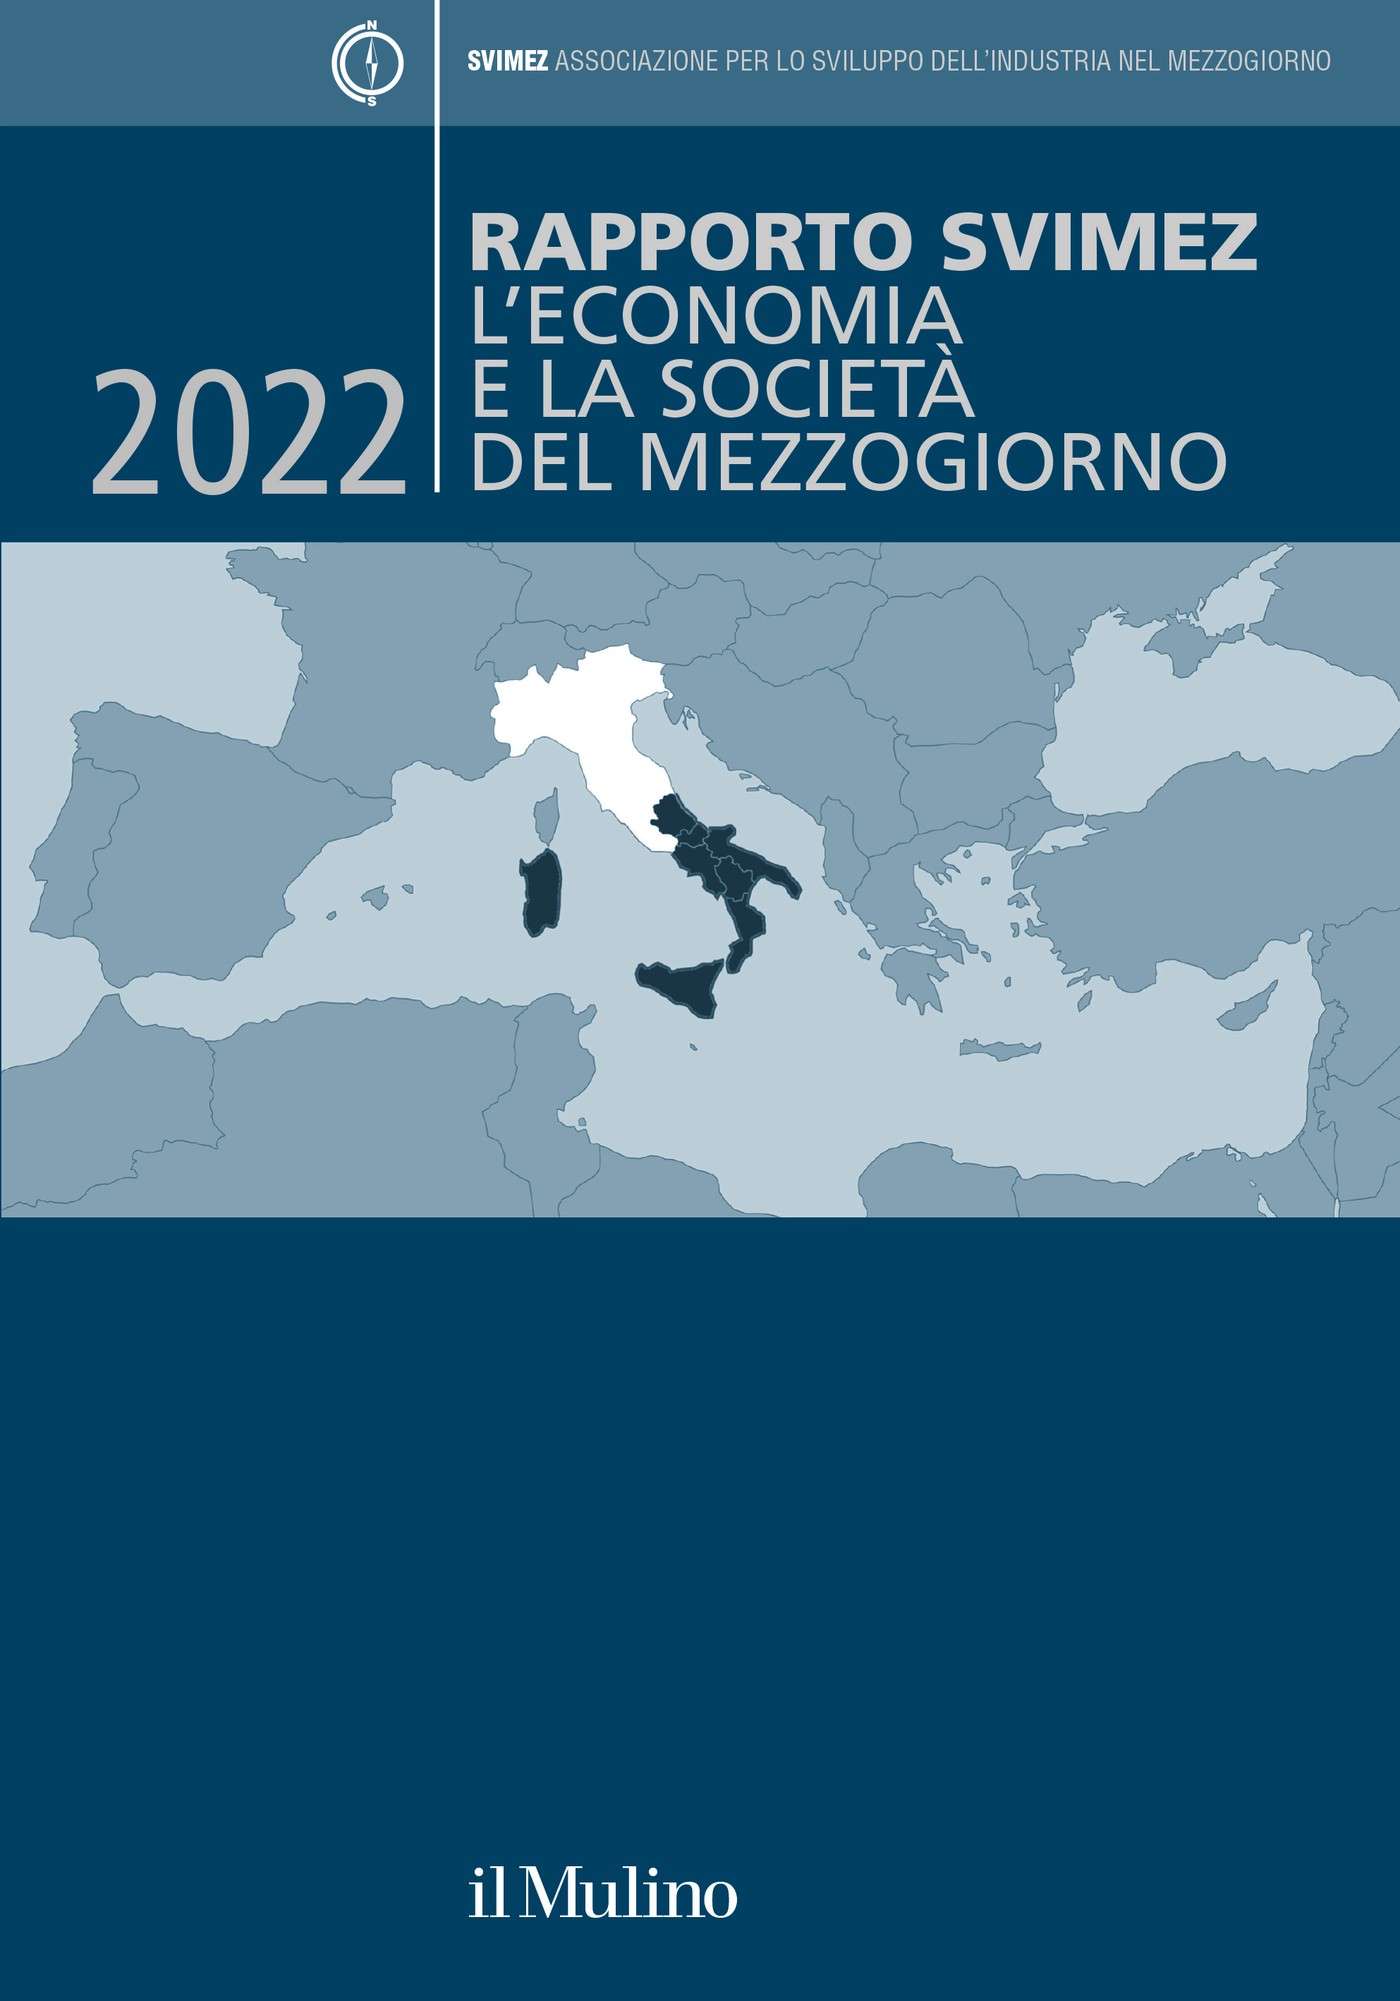 Rapporto SVIMEZ 2022 - Librerie.coop